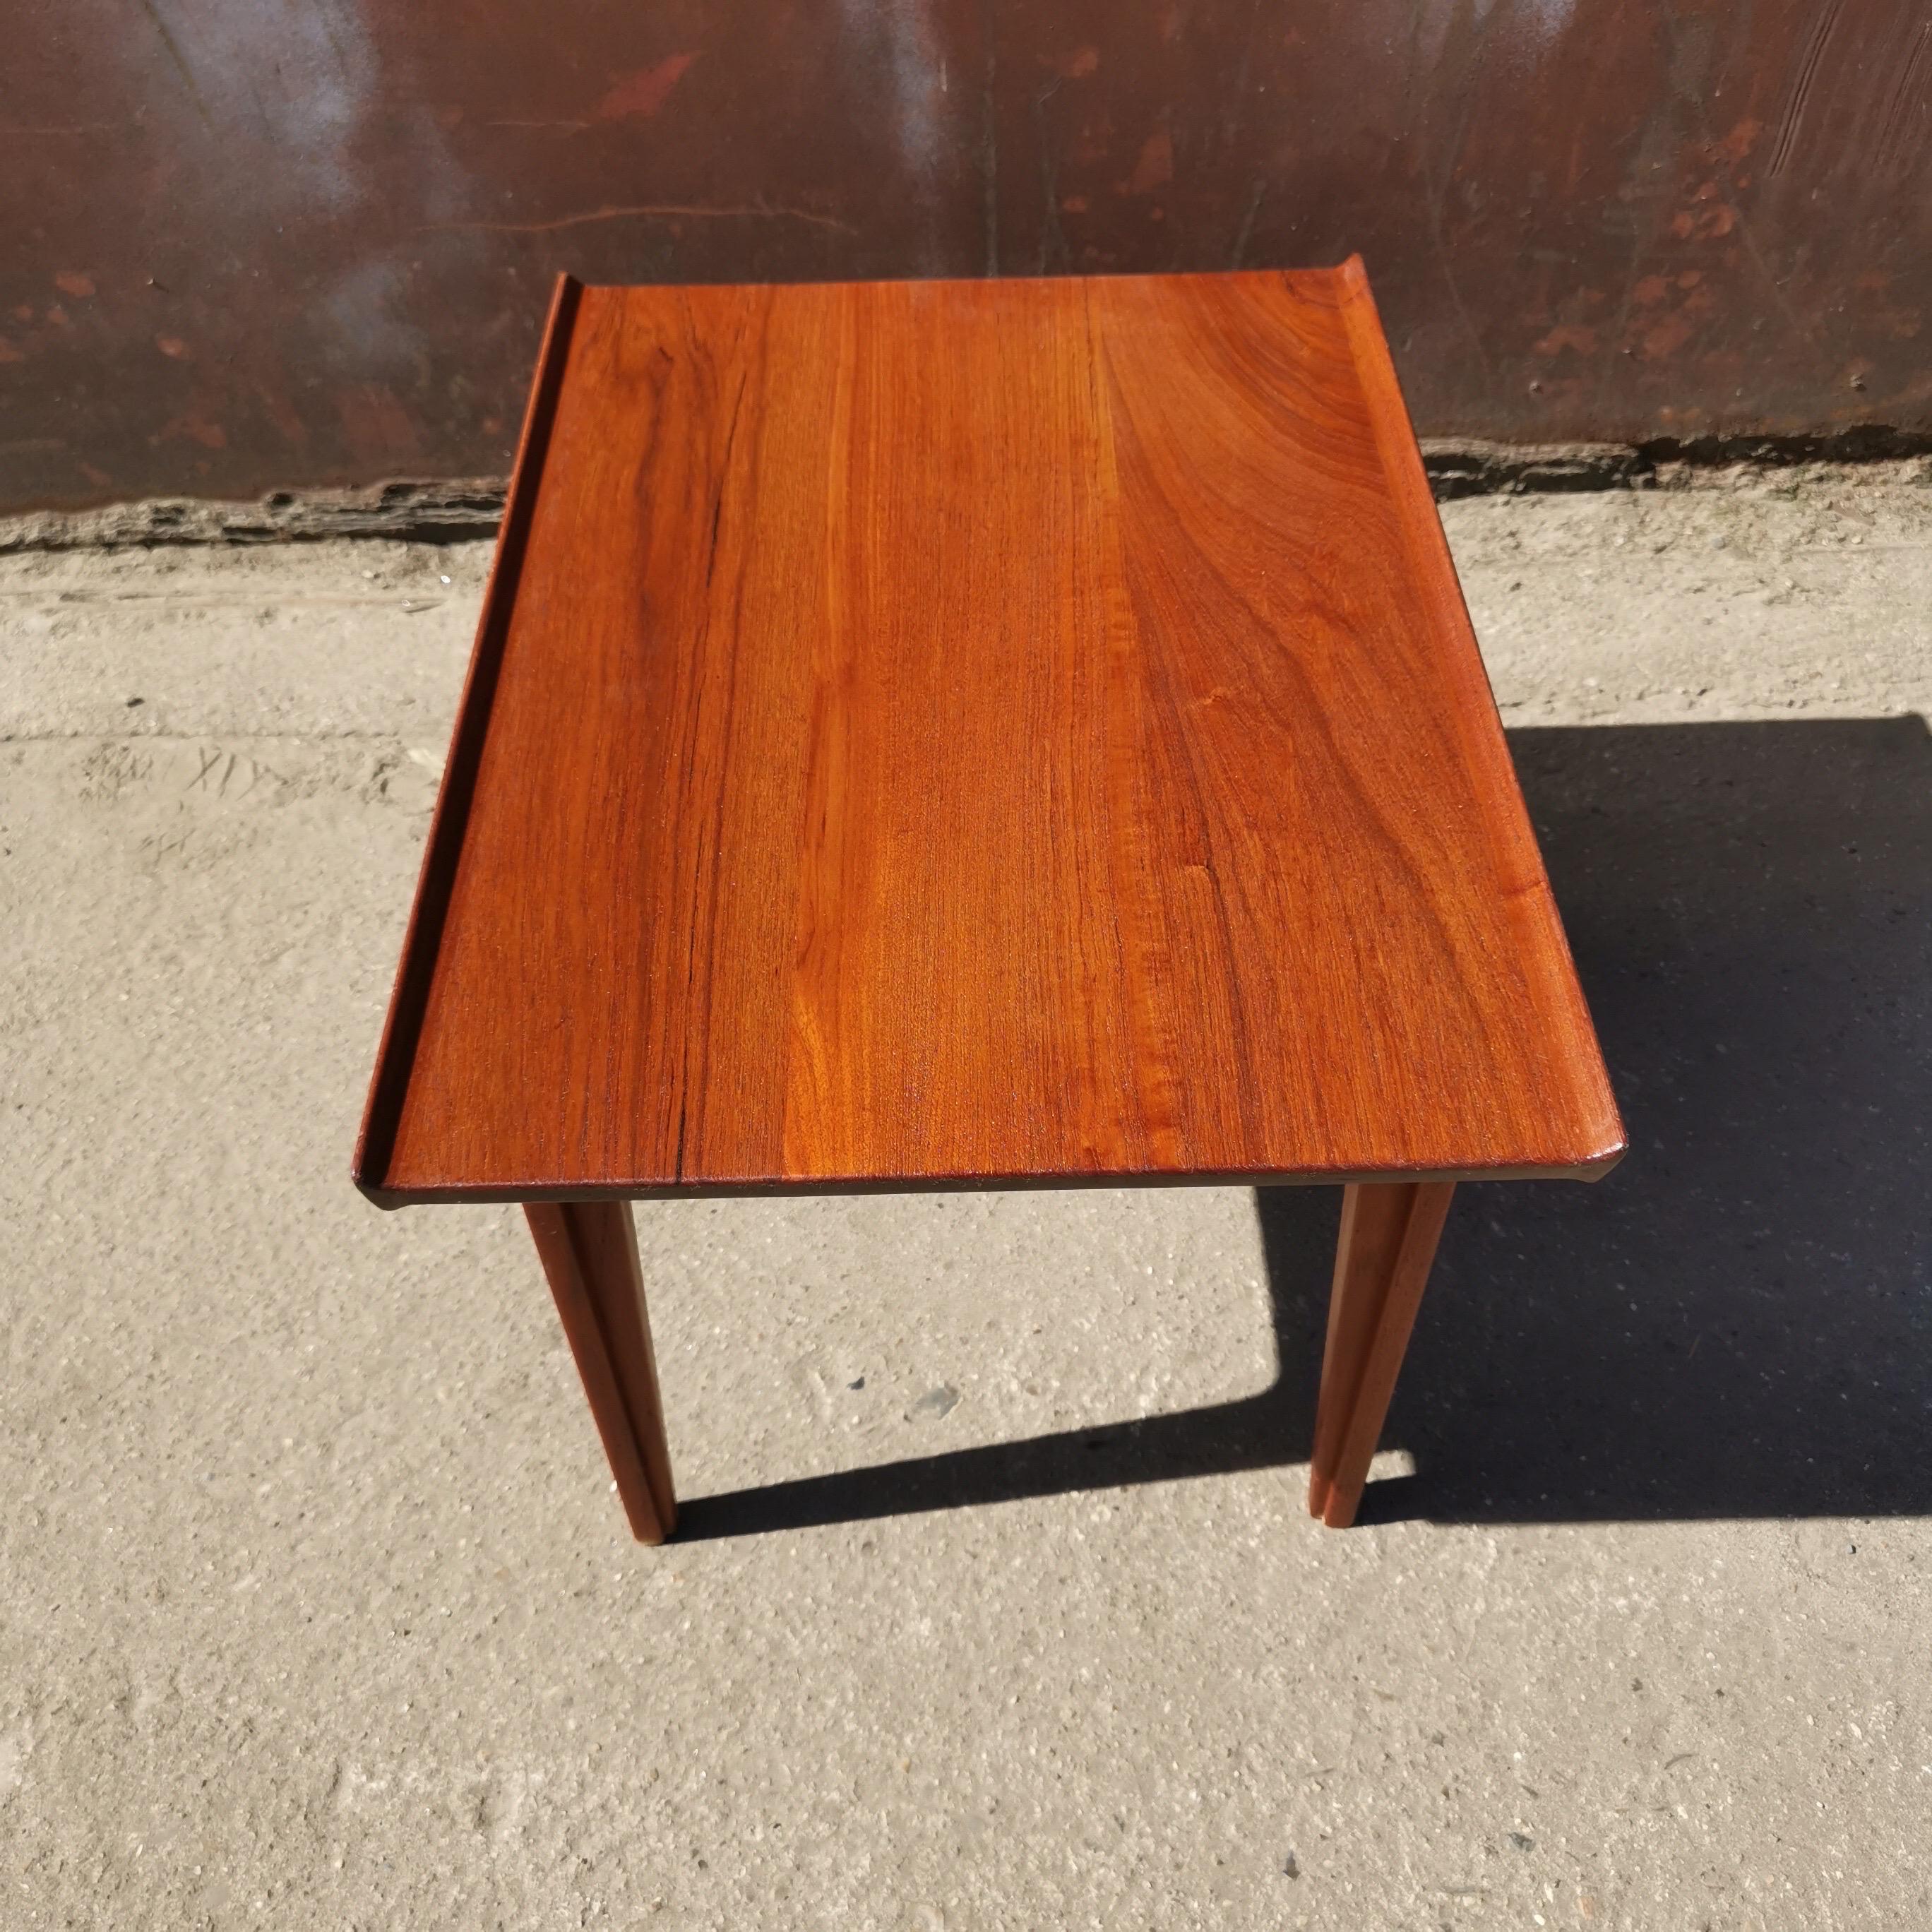 Rare side table by Finn Juhl in solid teakwood. Model 